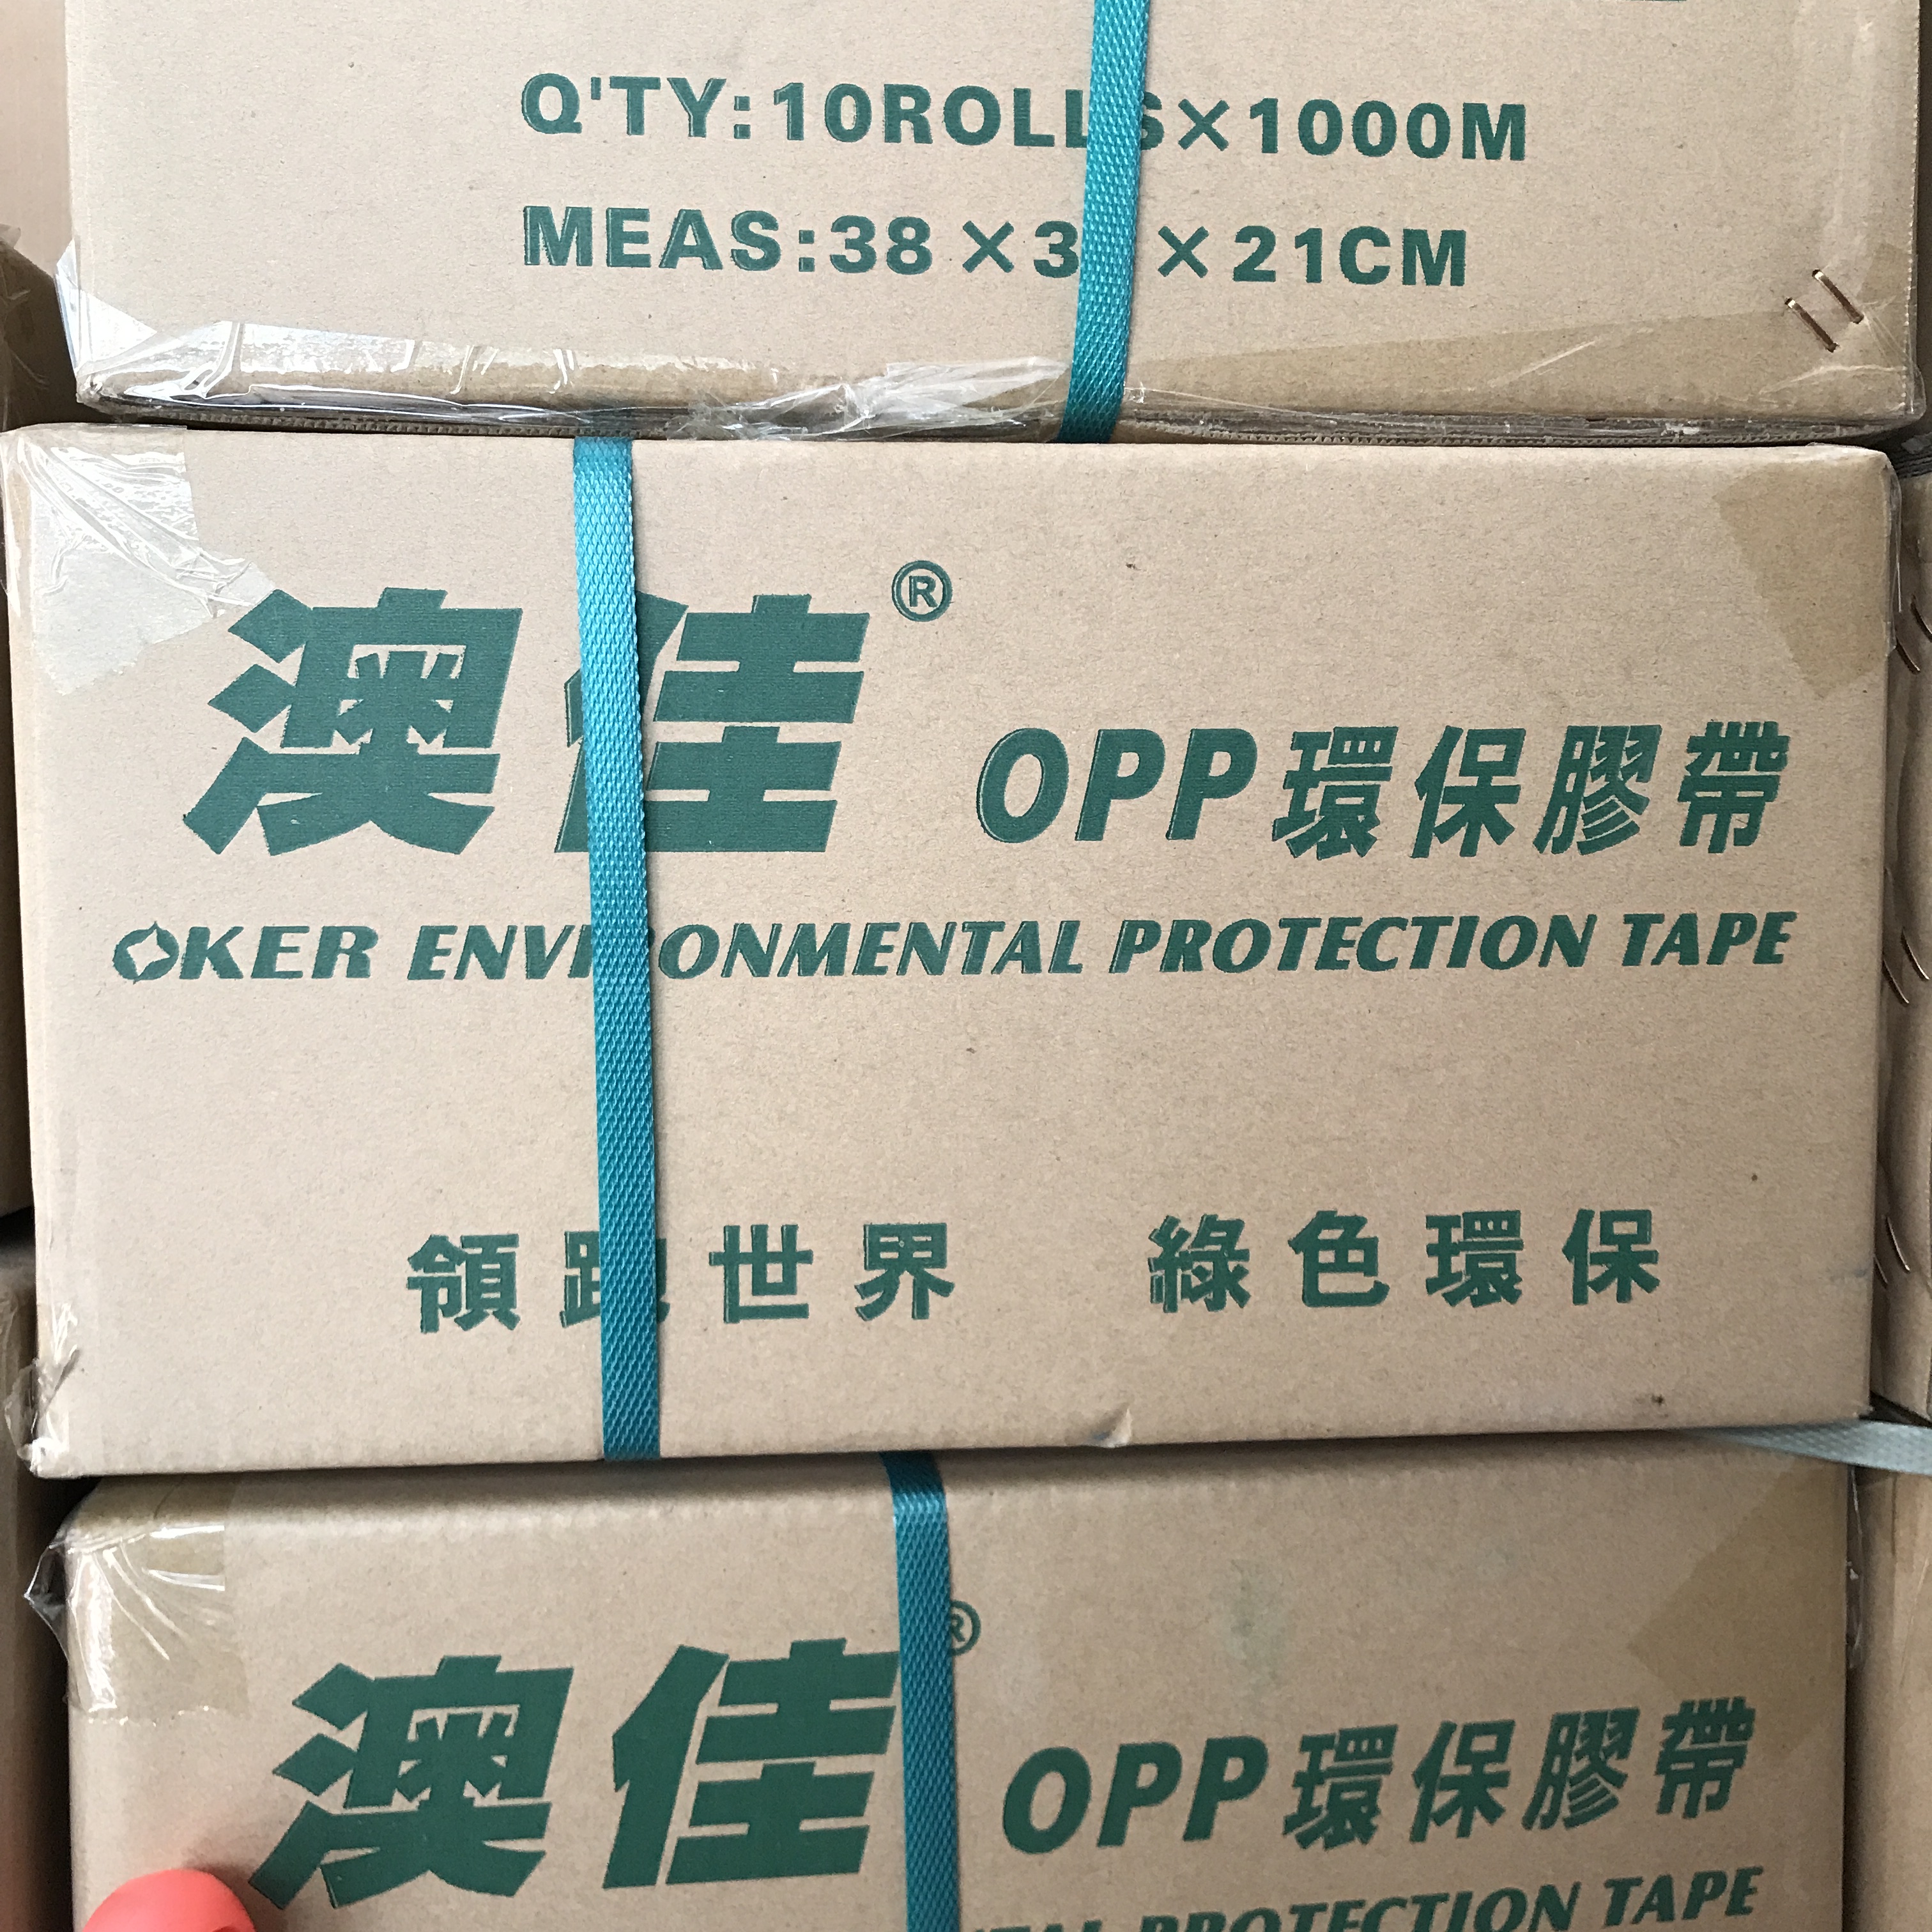 现货澳佳OPP封缄胶带 PE袋子用 外贸品质 15mm-18mmPE封缄胶带 1000米一卷 供应澳佳OPP封缄胶带